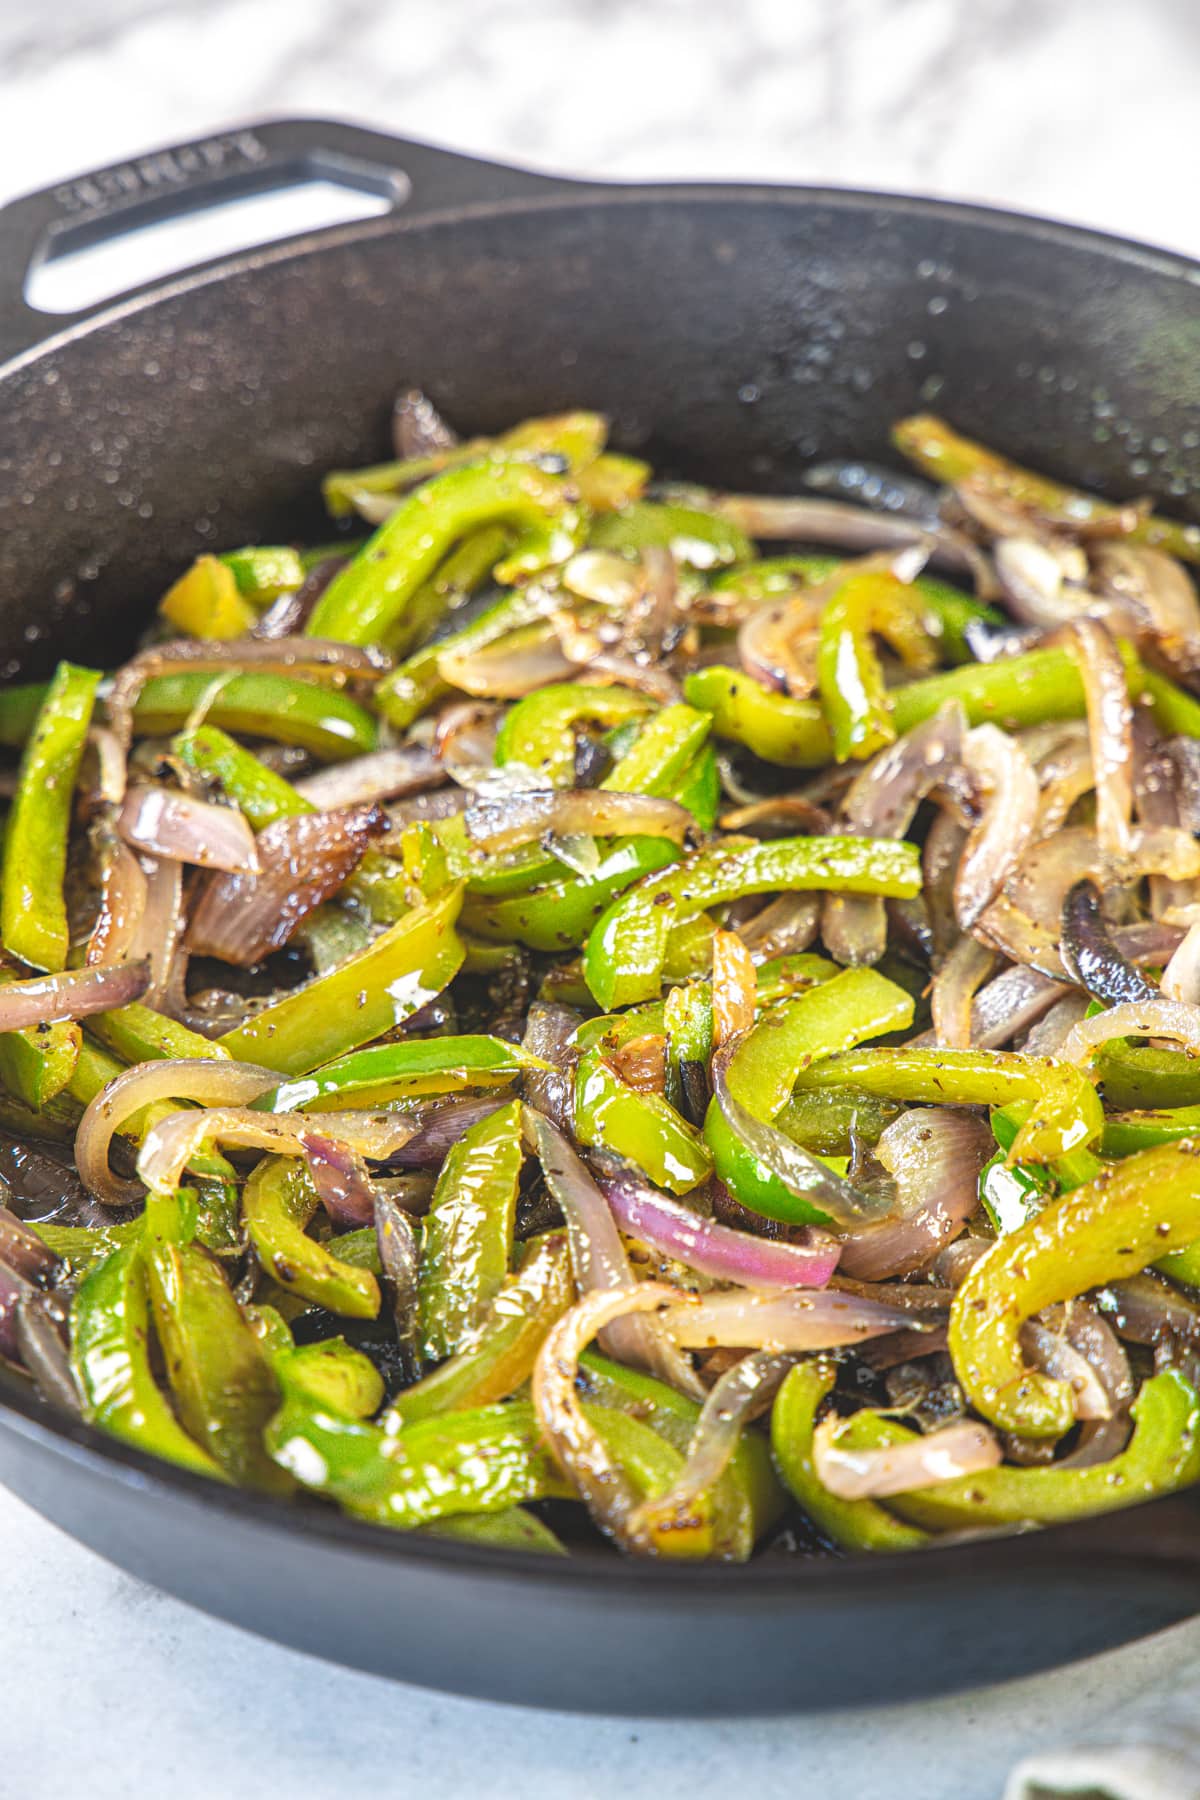 Fajita veggies in cast iron pan.